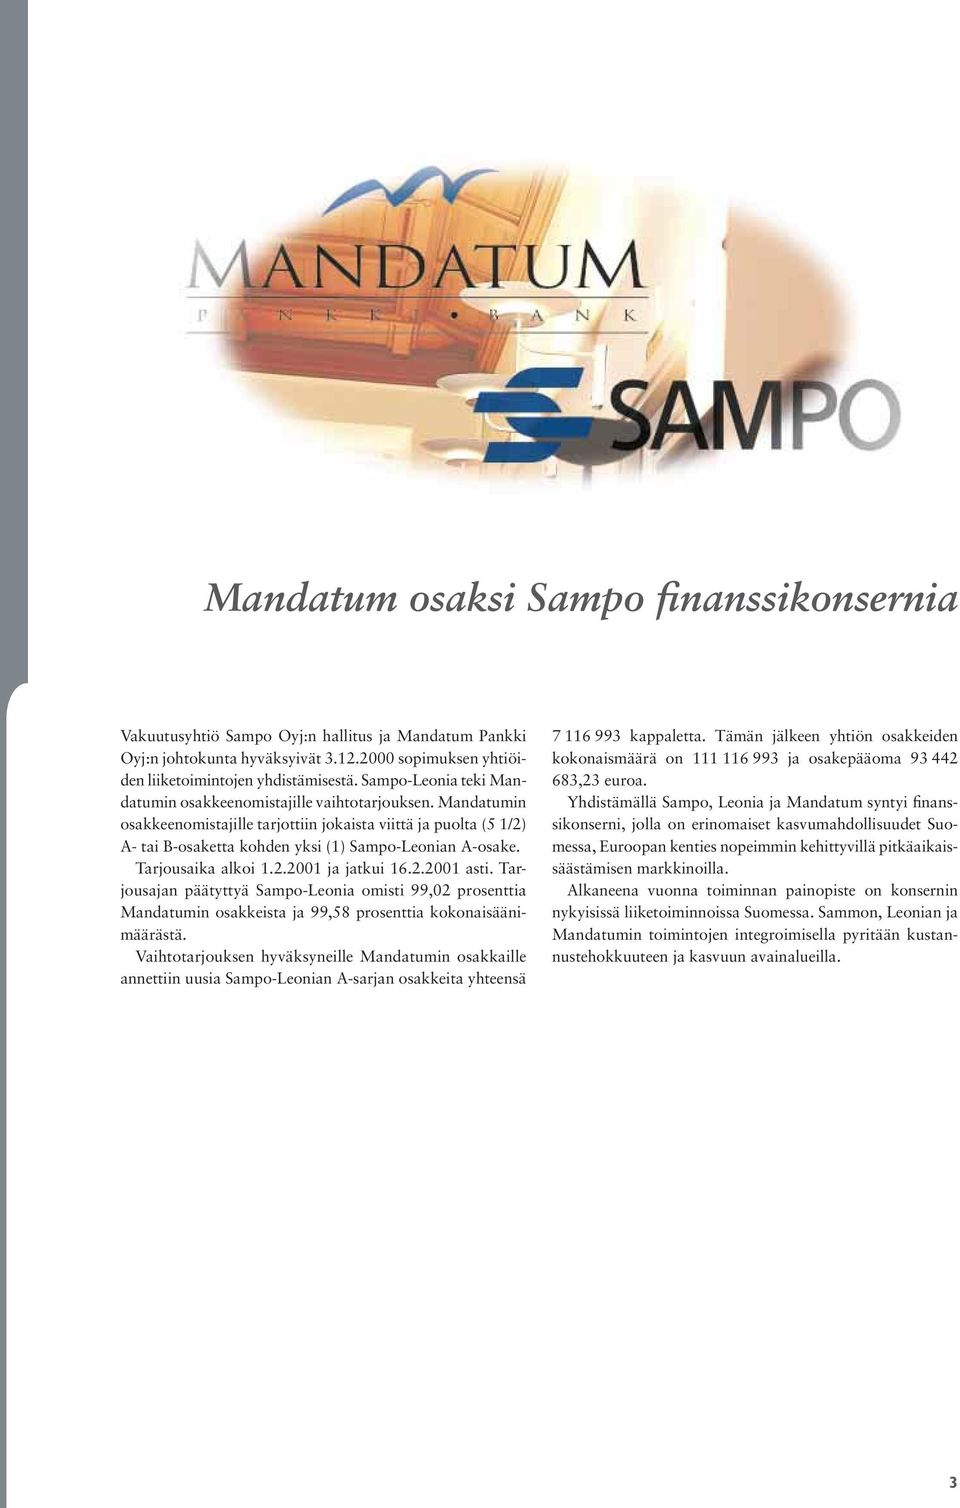 Tarjousaika alkoi 1.2.2001 ja jatkui 16.2.2001 asti. Tarjousajan päätyttyä Sampo-Leonia omisti 99,02 prosenttia Mandatumin osakkeista ja 99,58 prosenttia kokonaisäänimäärästä.